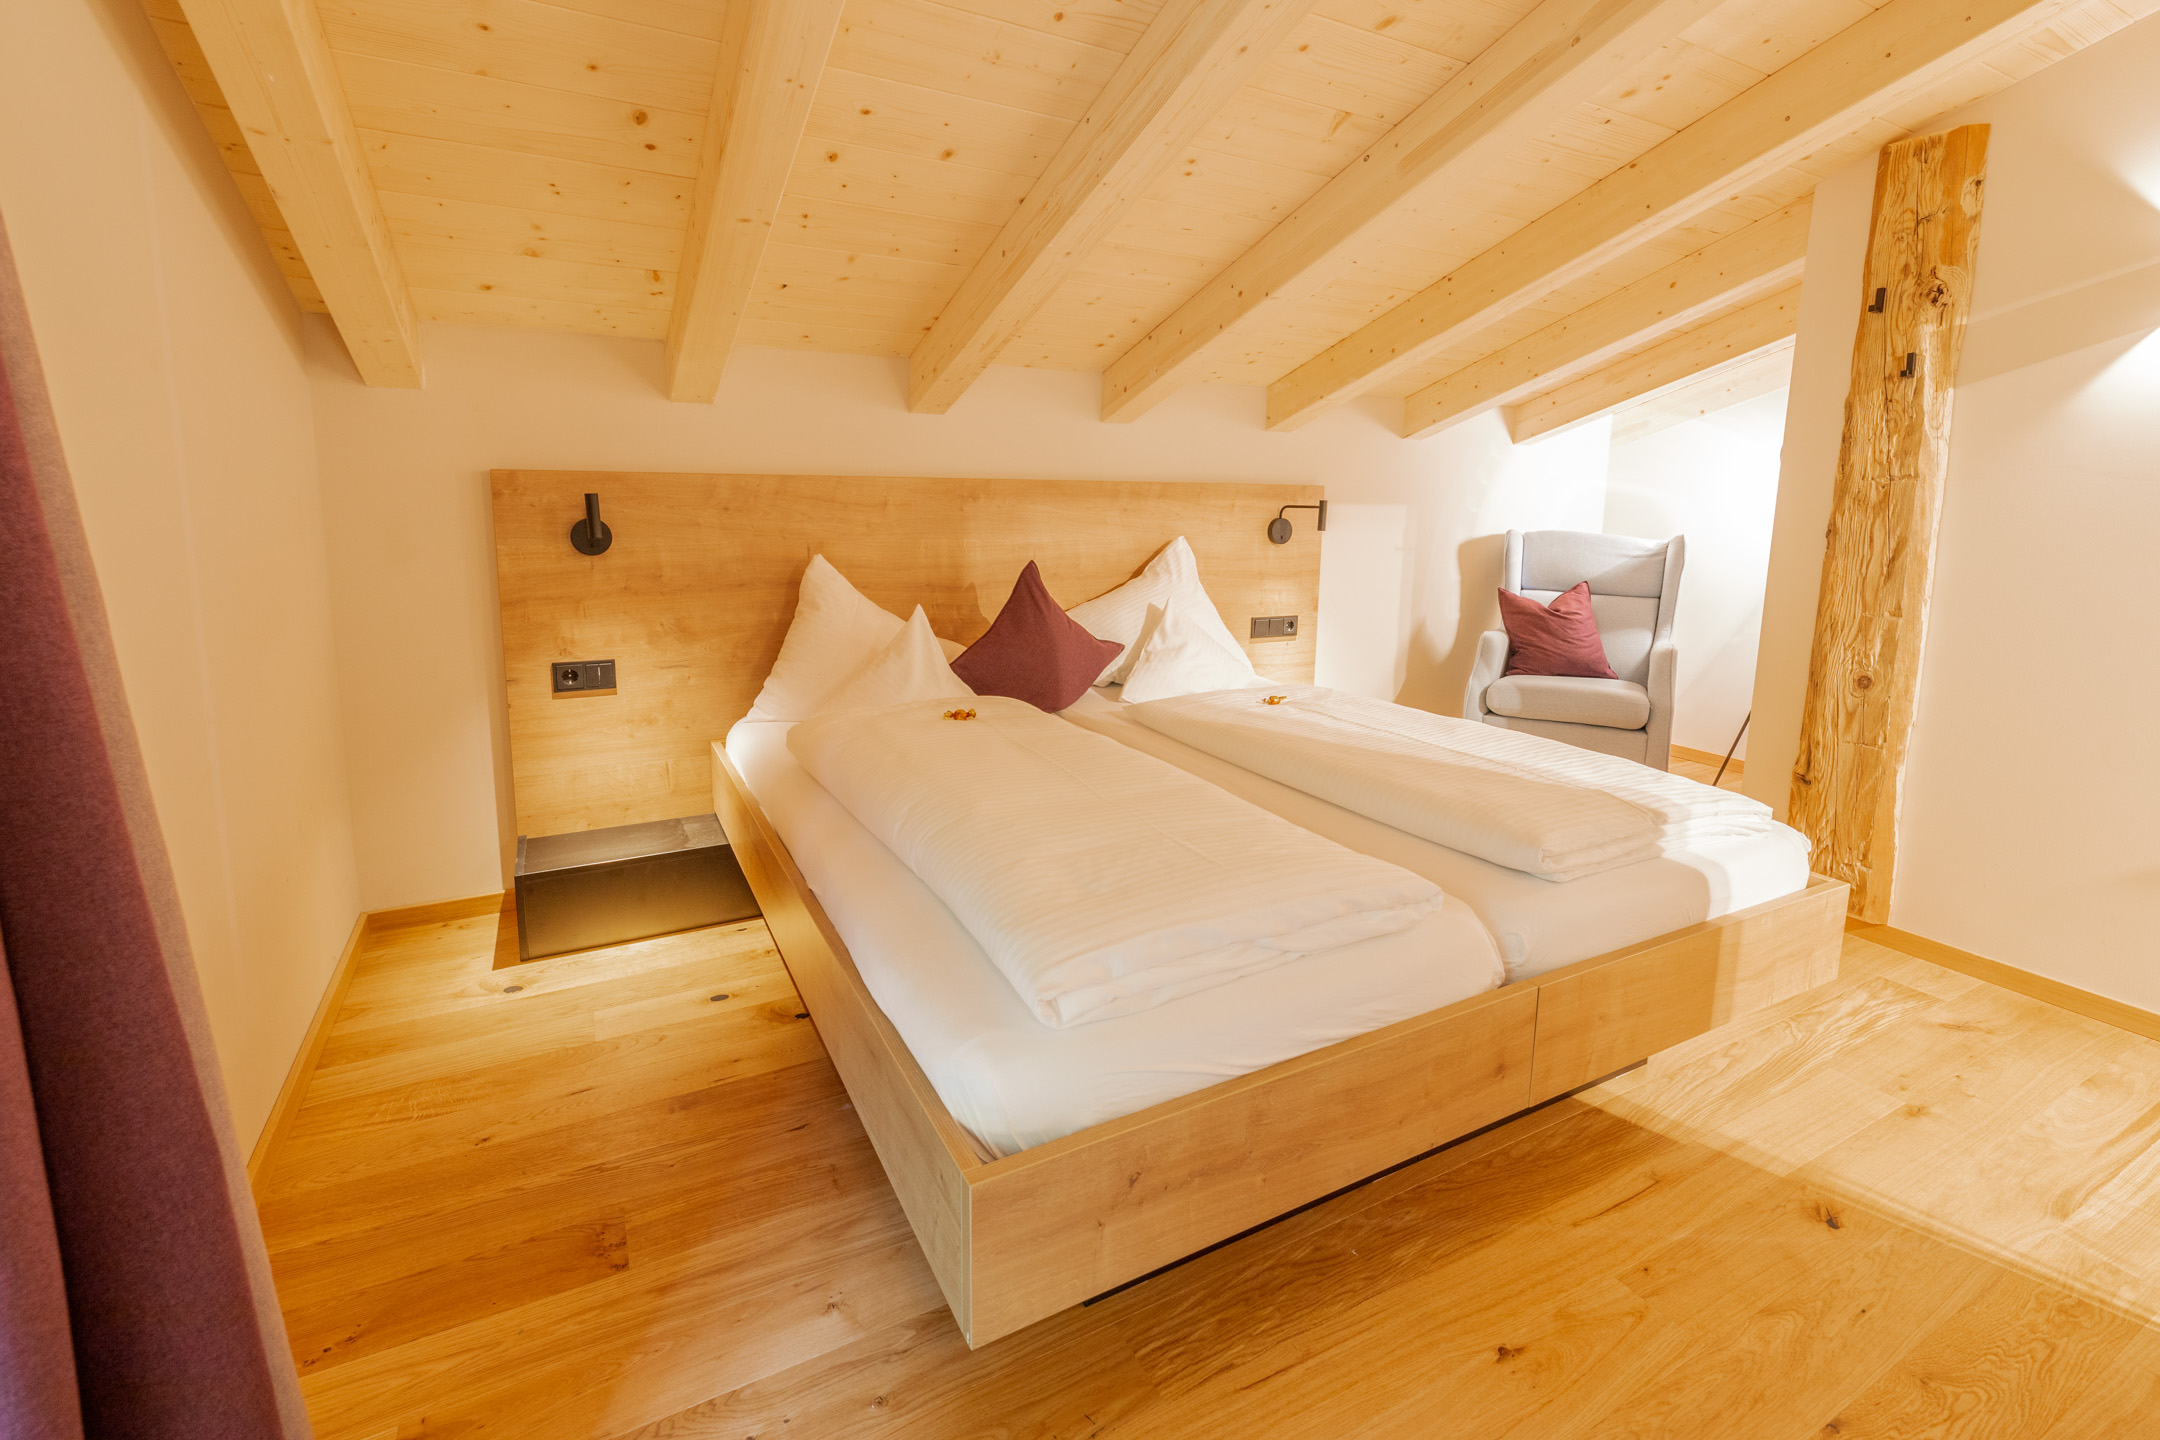 Große Suite für bis zu vier Personen im neuen Design Hotel Haus Jausern in Saalbach. Genießen sie den Luxus, einer Familien Suite mit getrennten Schlafzimmern. Raum hoch zwei, bietet genügend Platz um sich auszubreiten, privat aber doch zusammen.